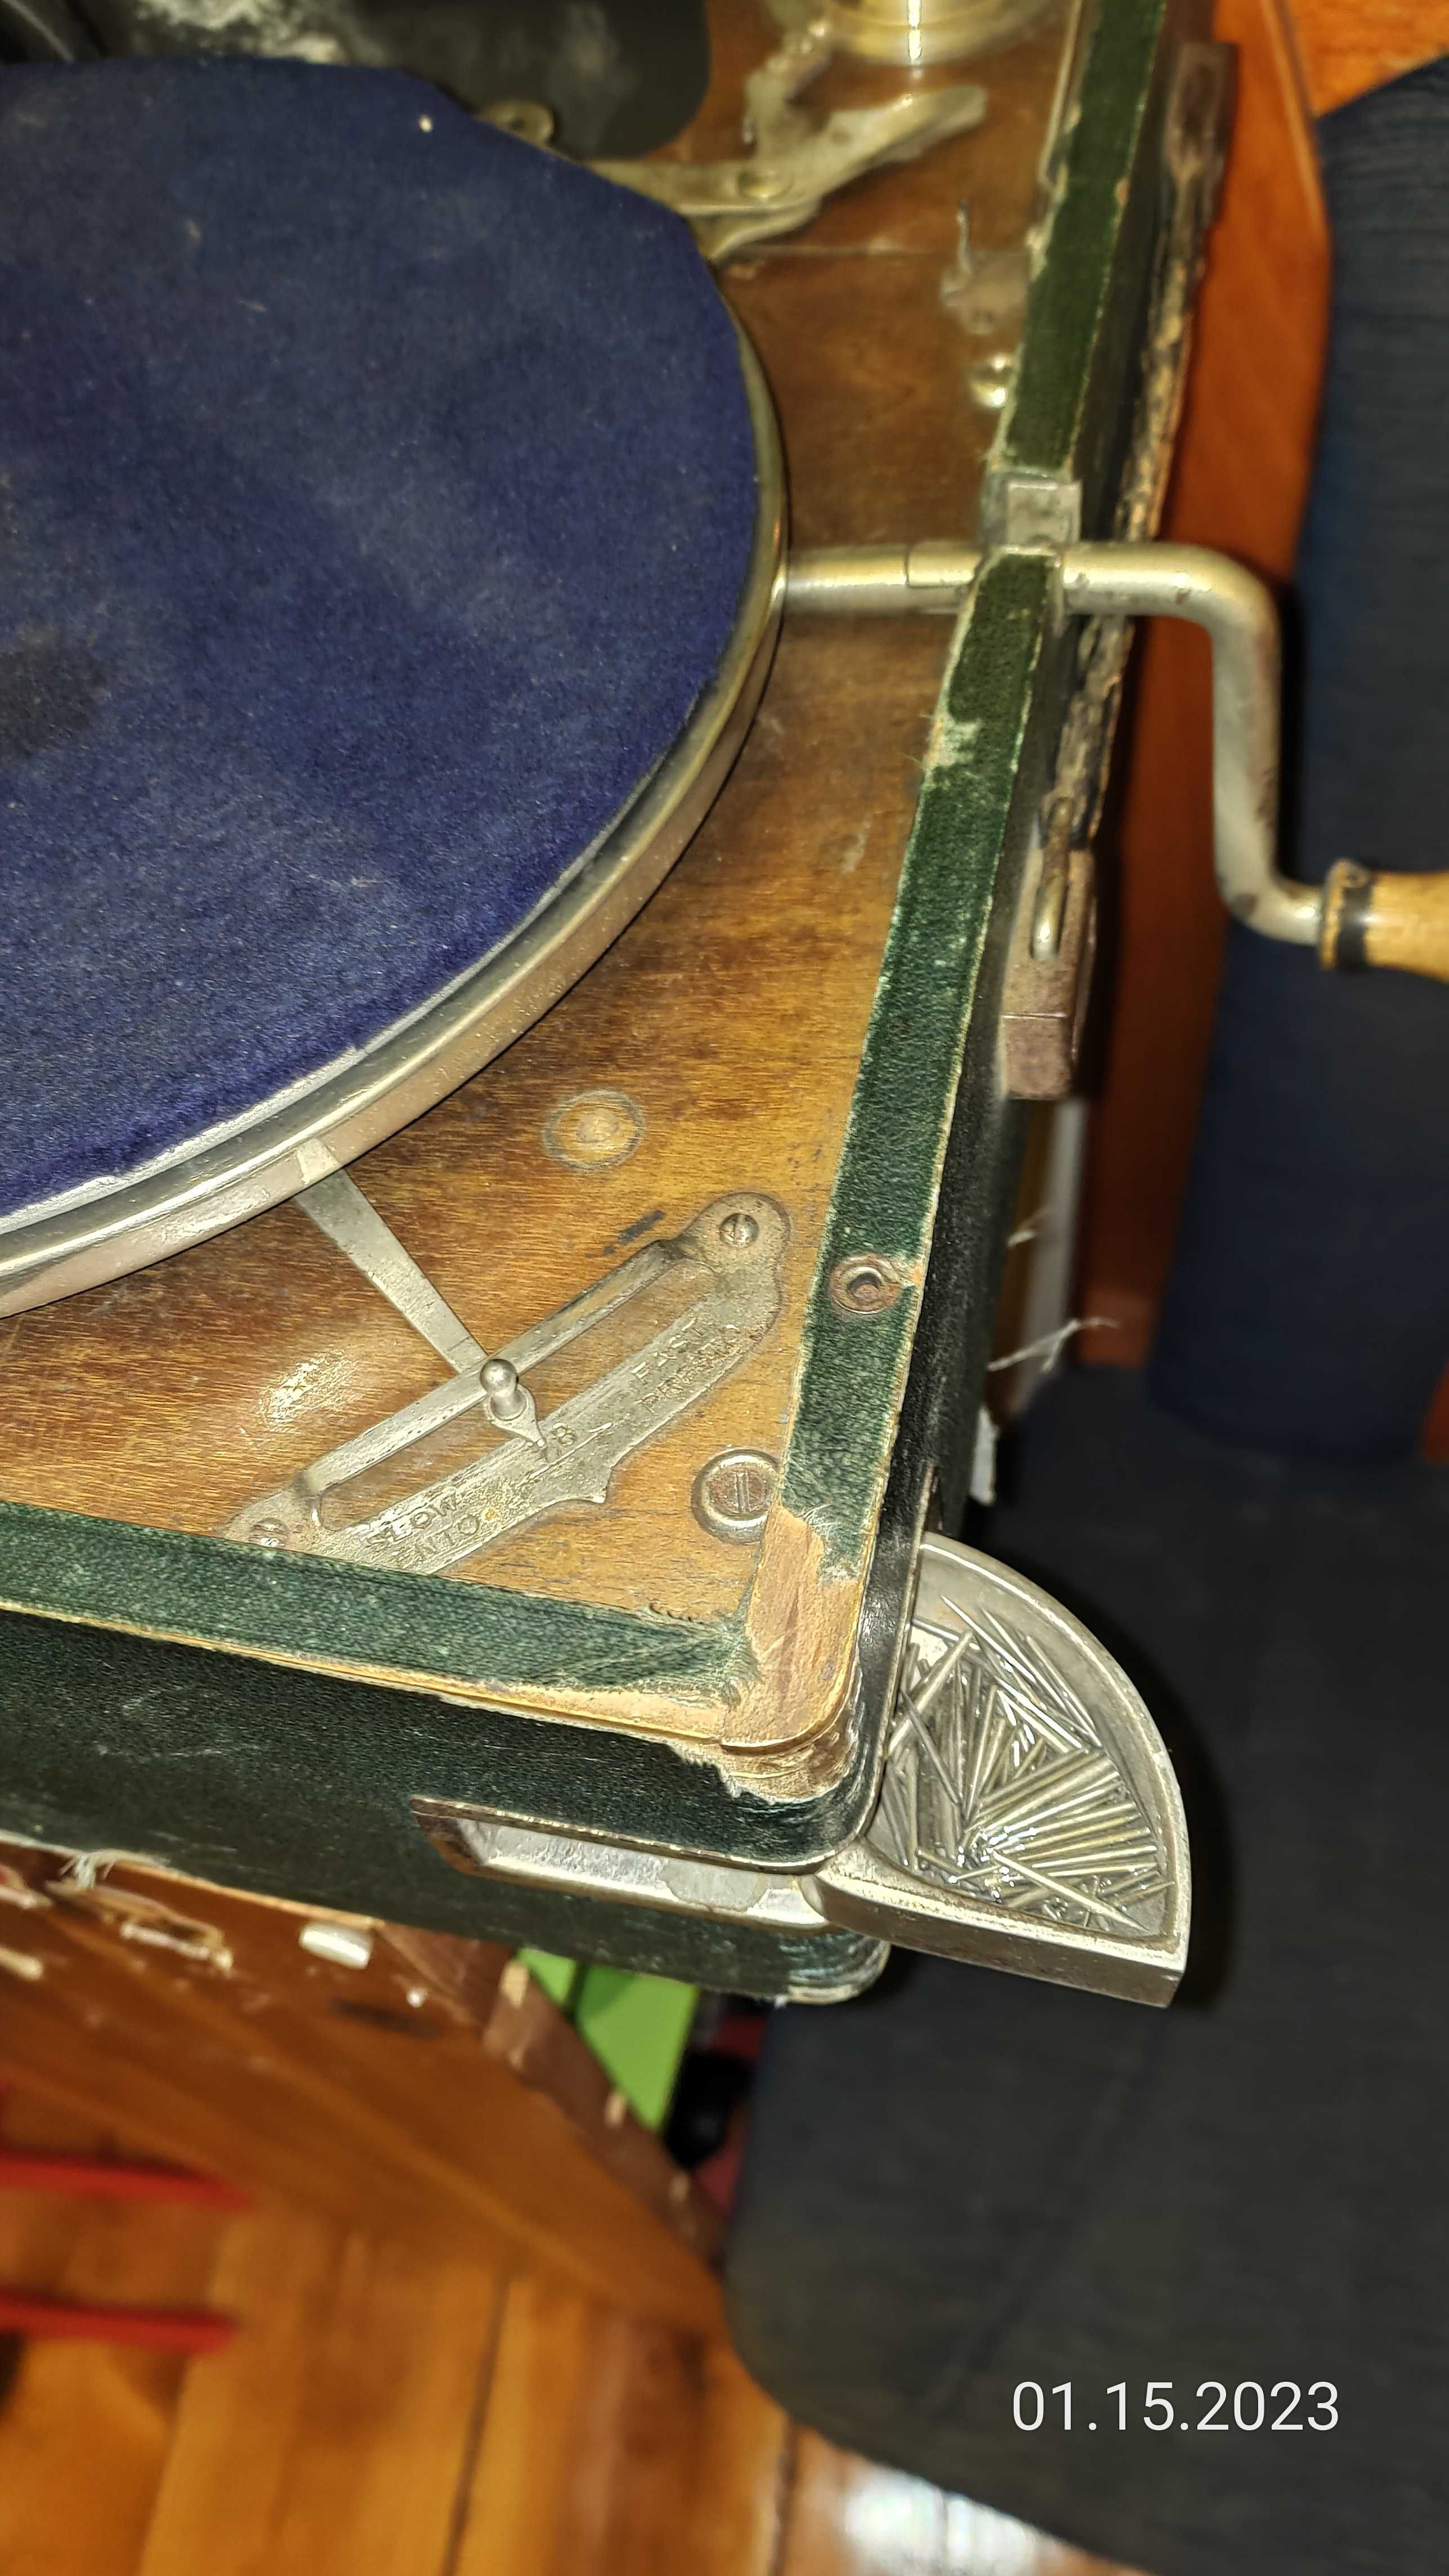 Gramofon Thorens z igłami przedwojenny antyk